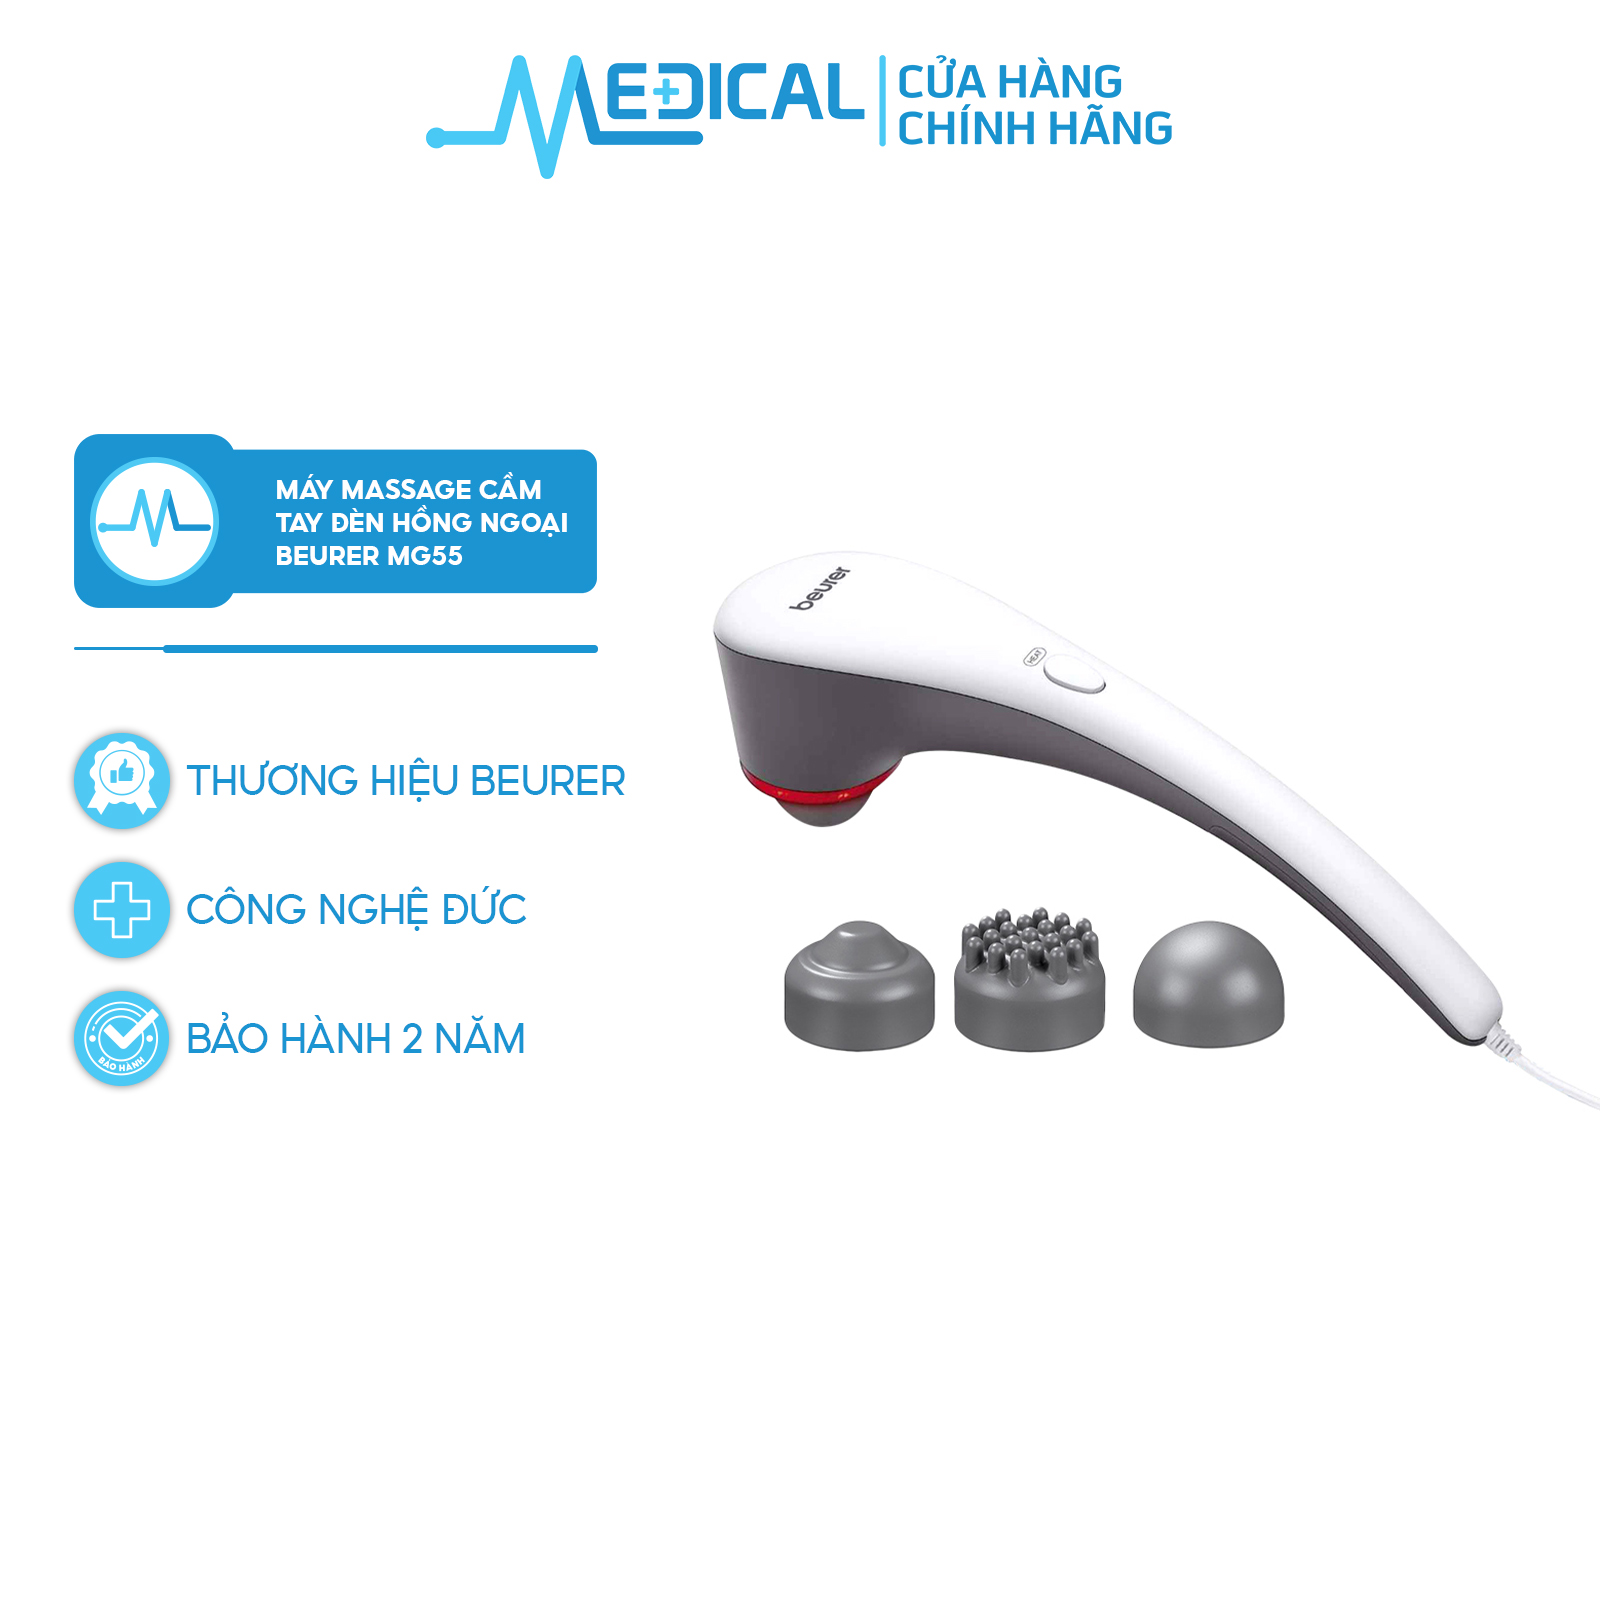 Máy massage cầm tay BEURER MG55 sử dụng đèn hồng ngoại - MEDICAL